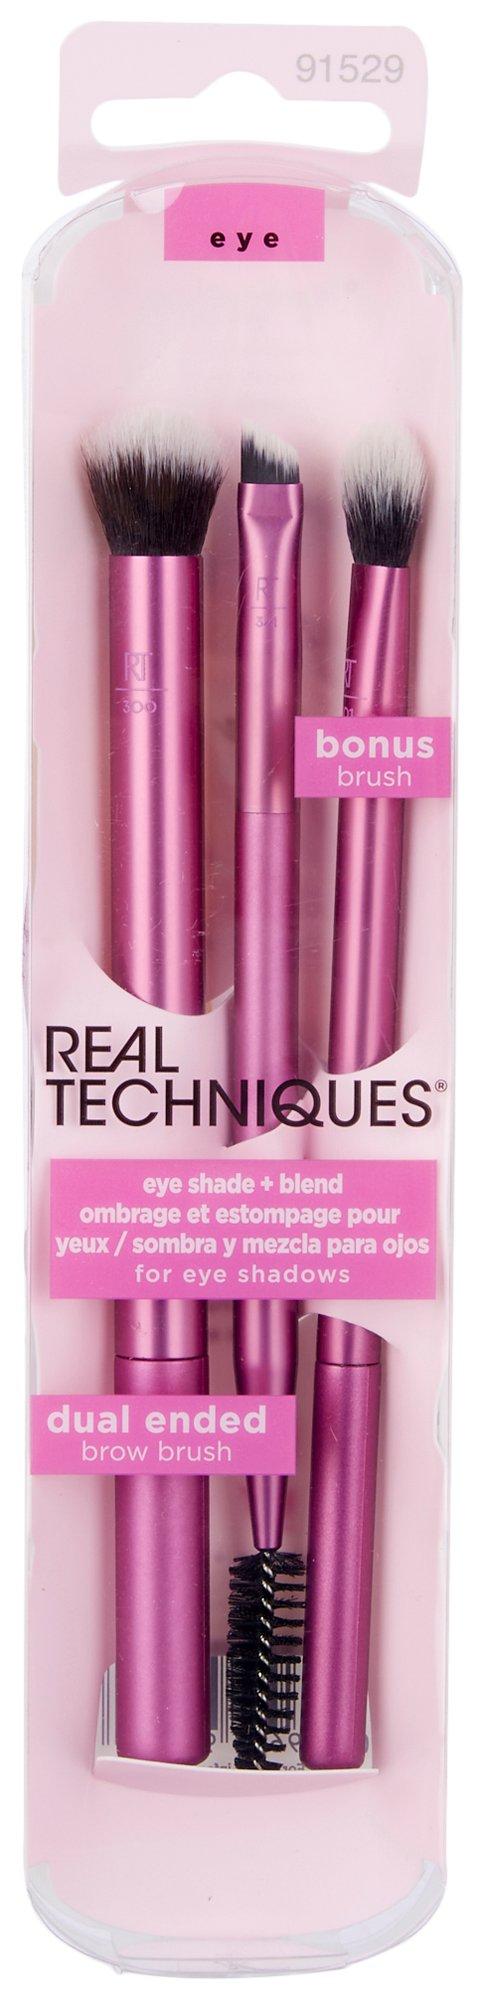 3-Pc. Eye Shade & Blend Makeup Brush Set